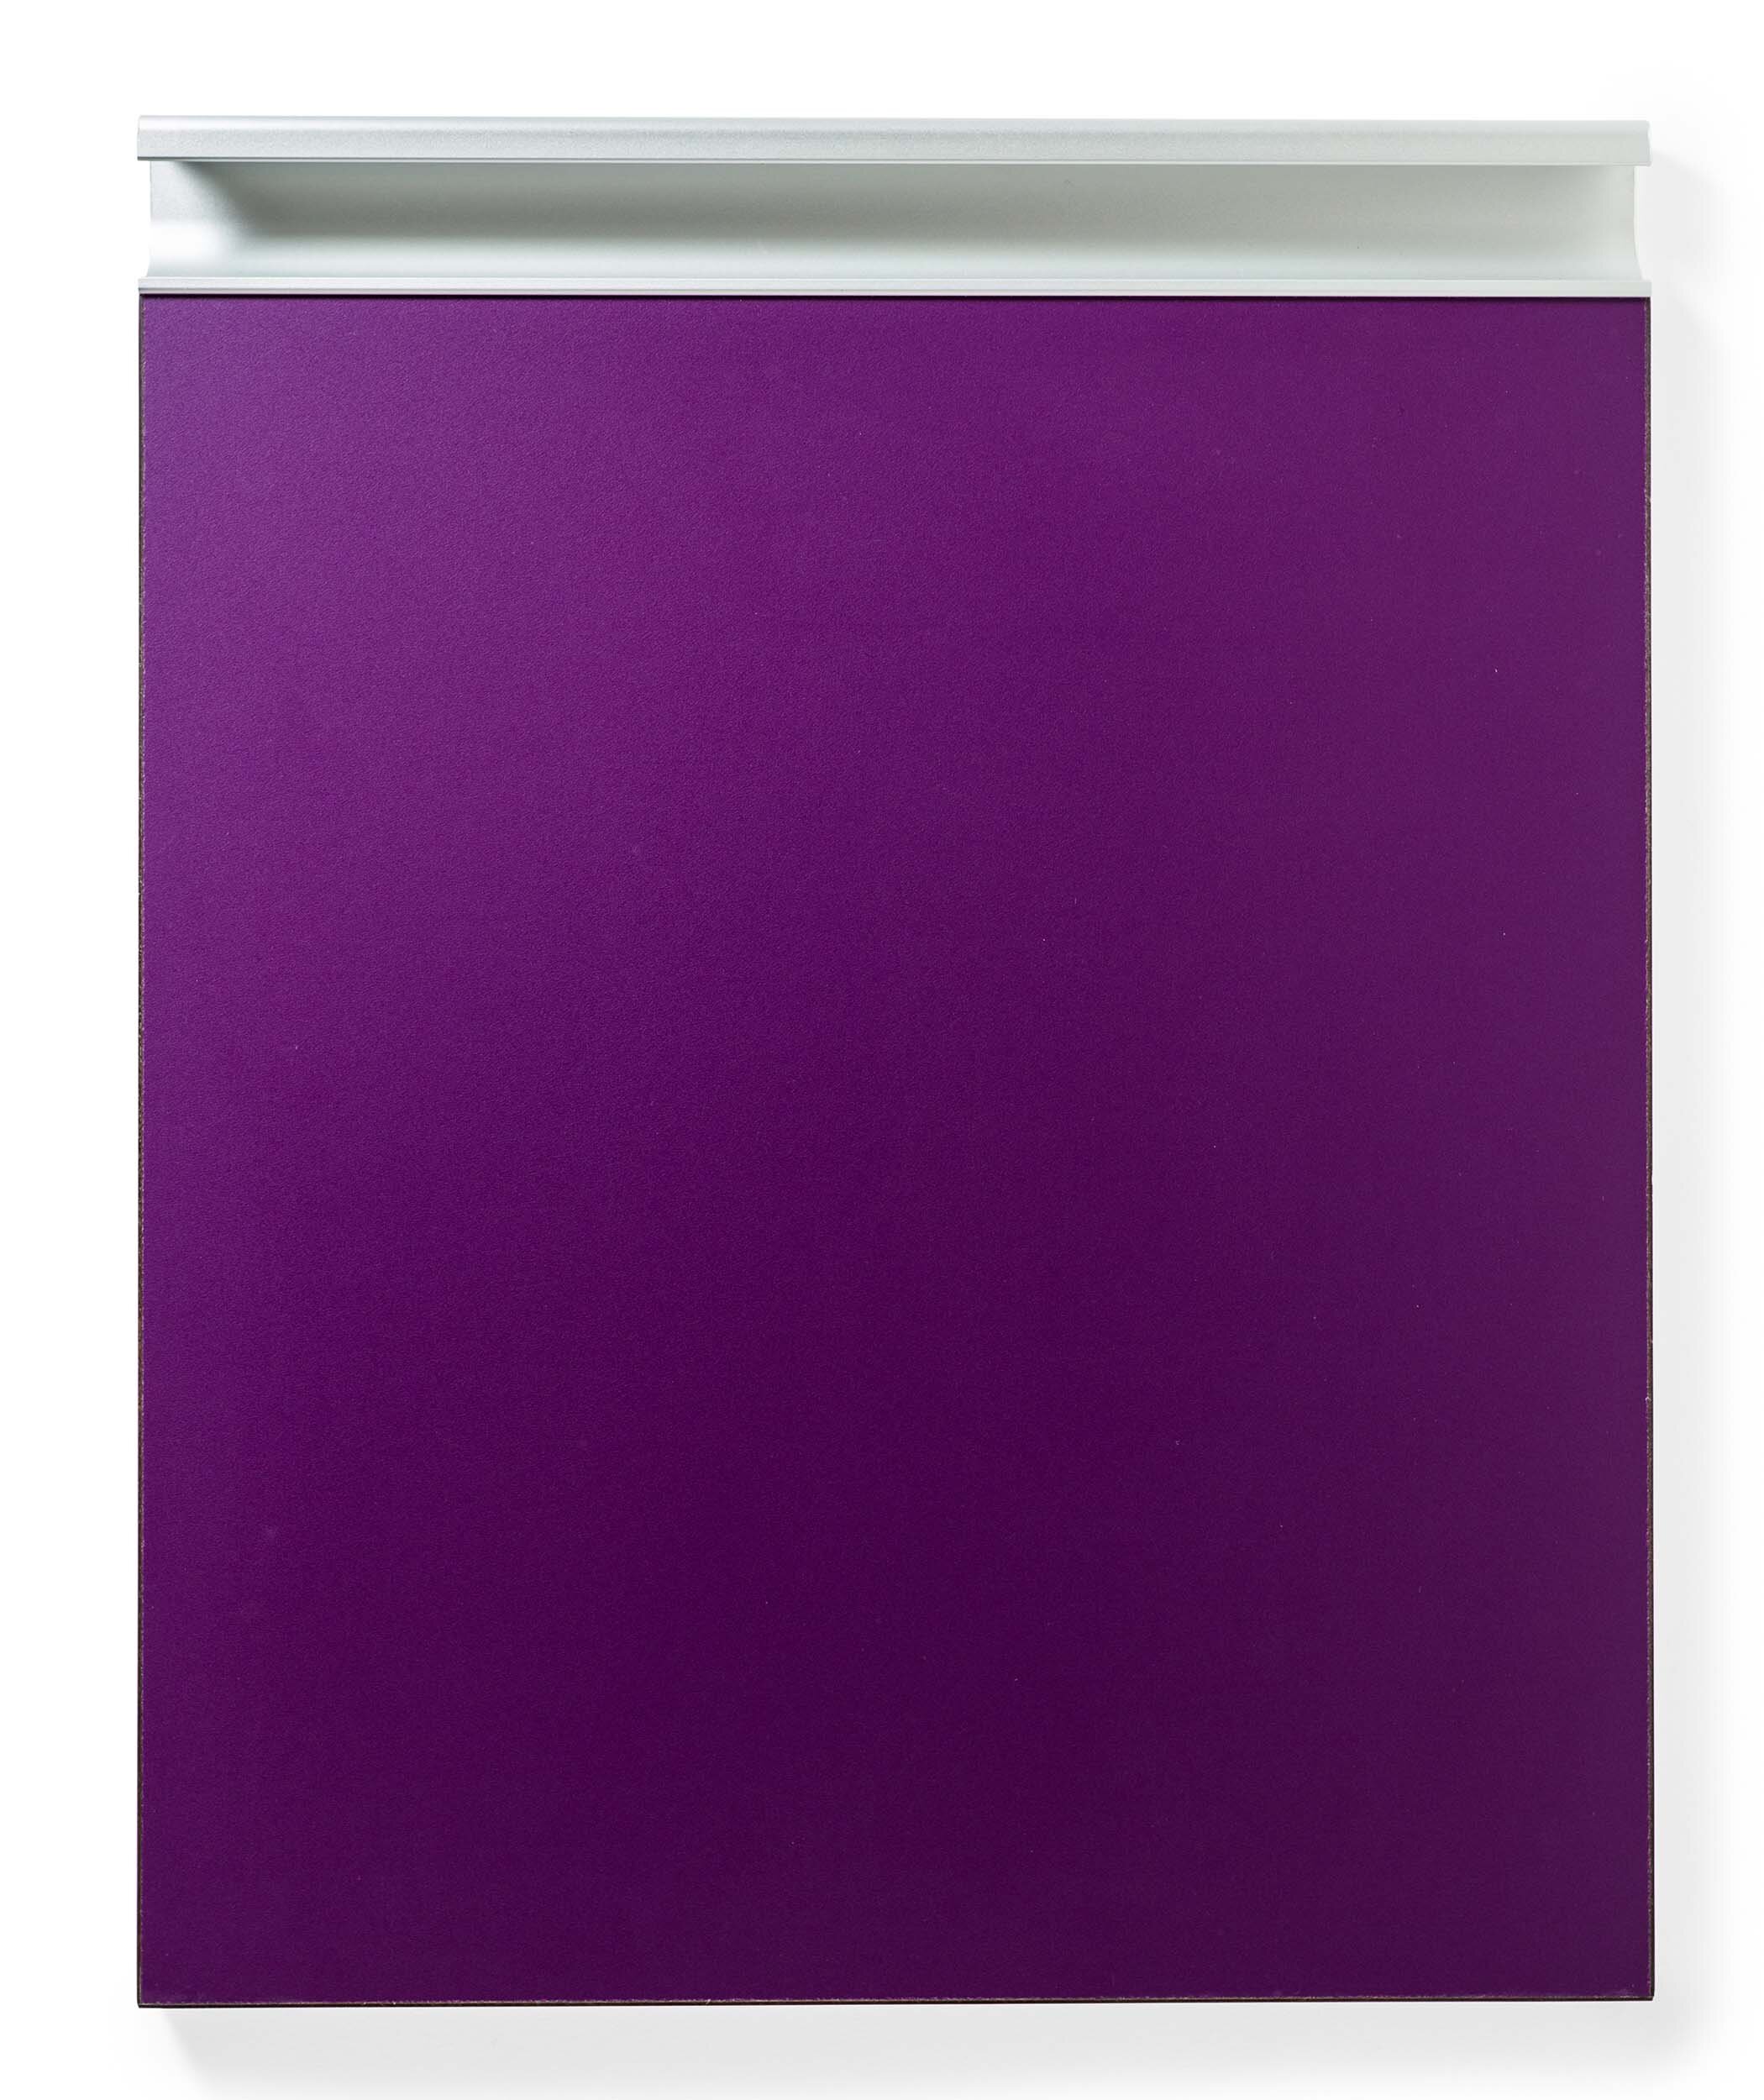 designer-laminate-cabinet-door-cassis-sequel-aluminum-pull-front.jpg